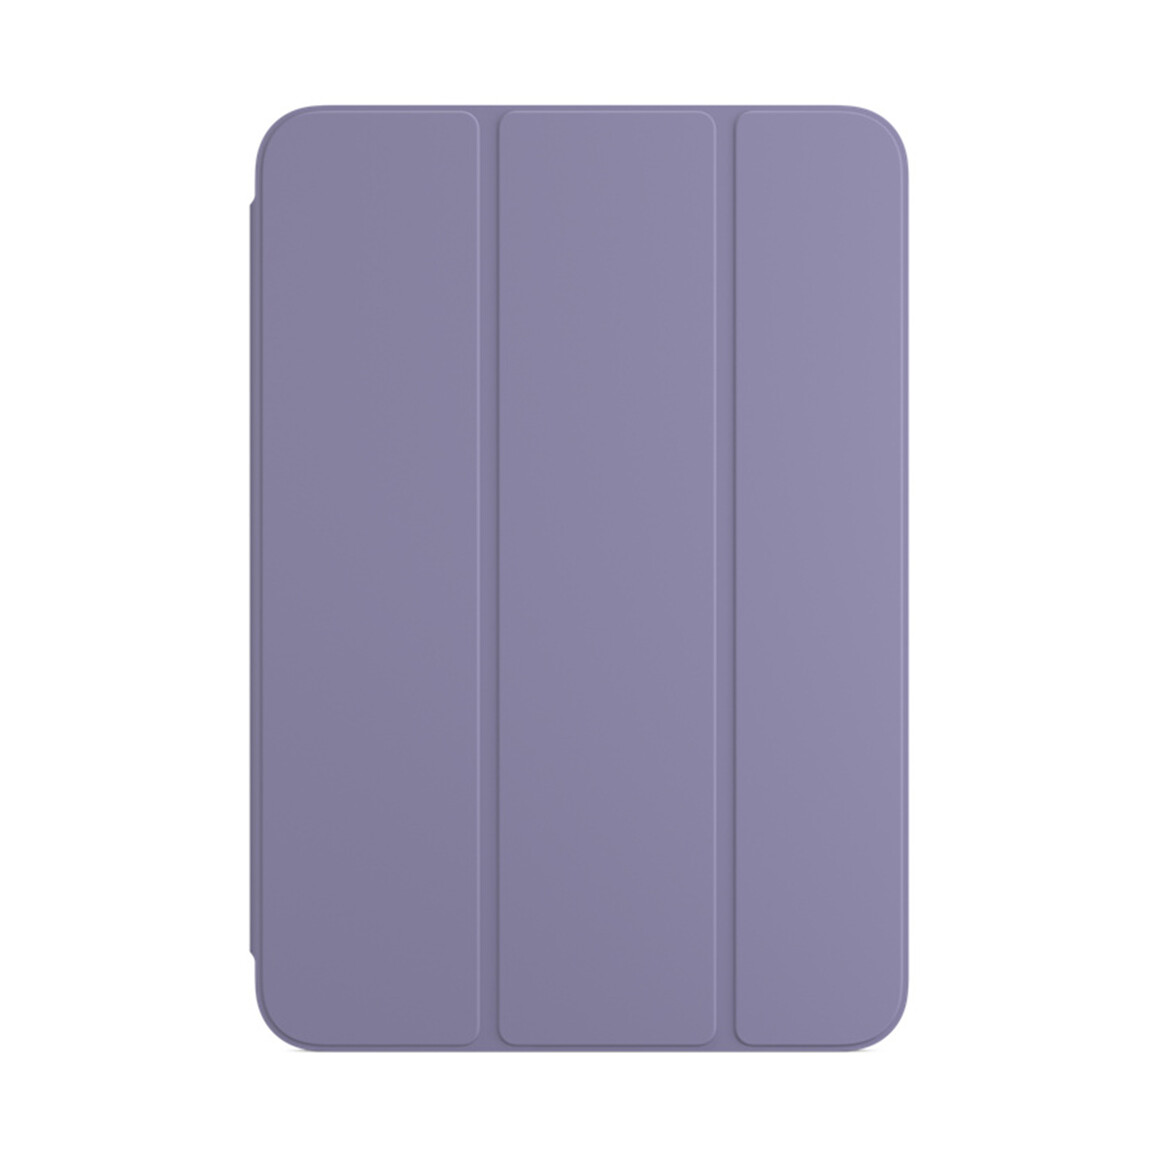 <h1>Apple iPad Mini (6. Gen) Smart Folio, englisch lavendel</h1>